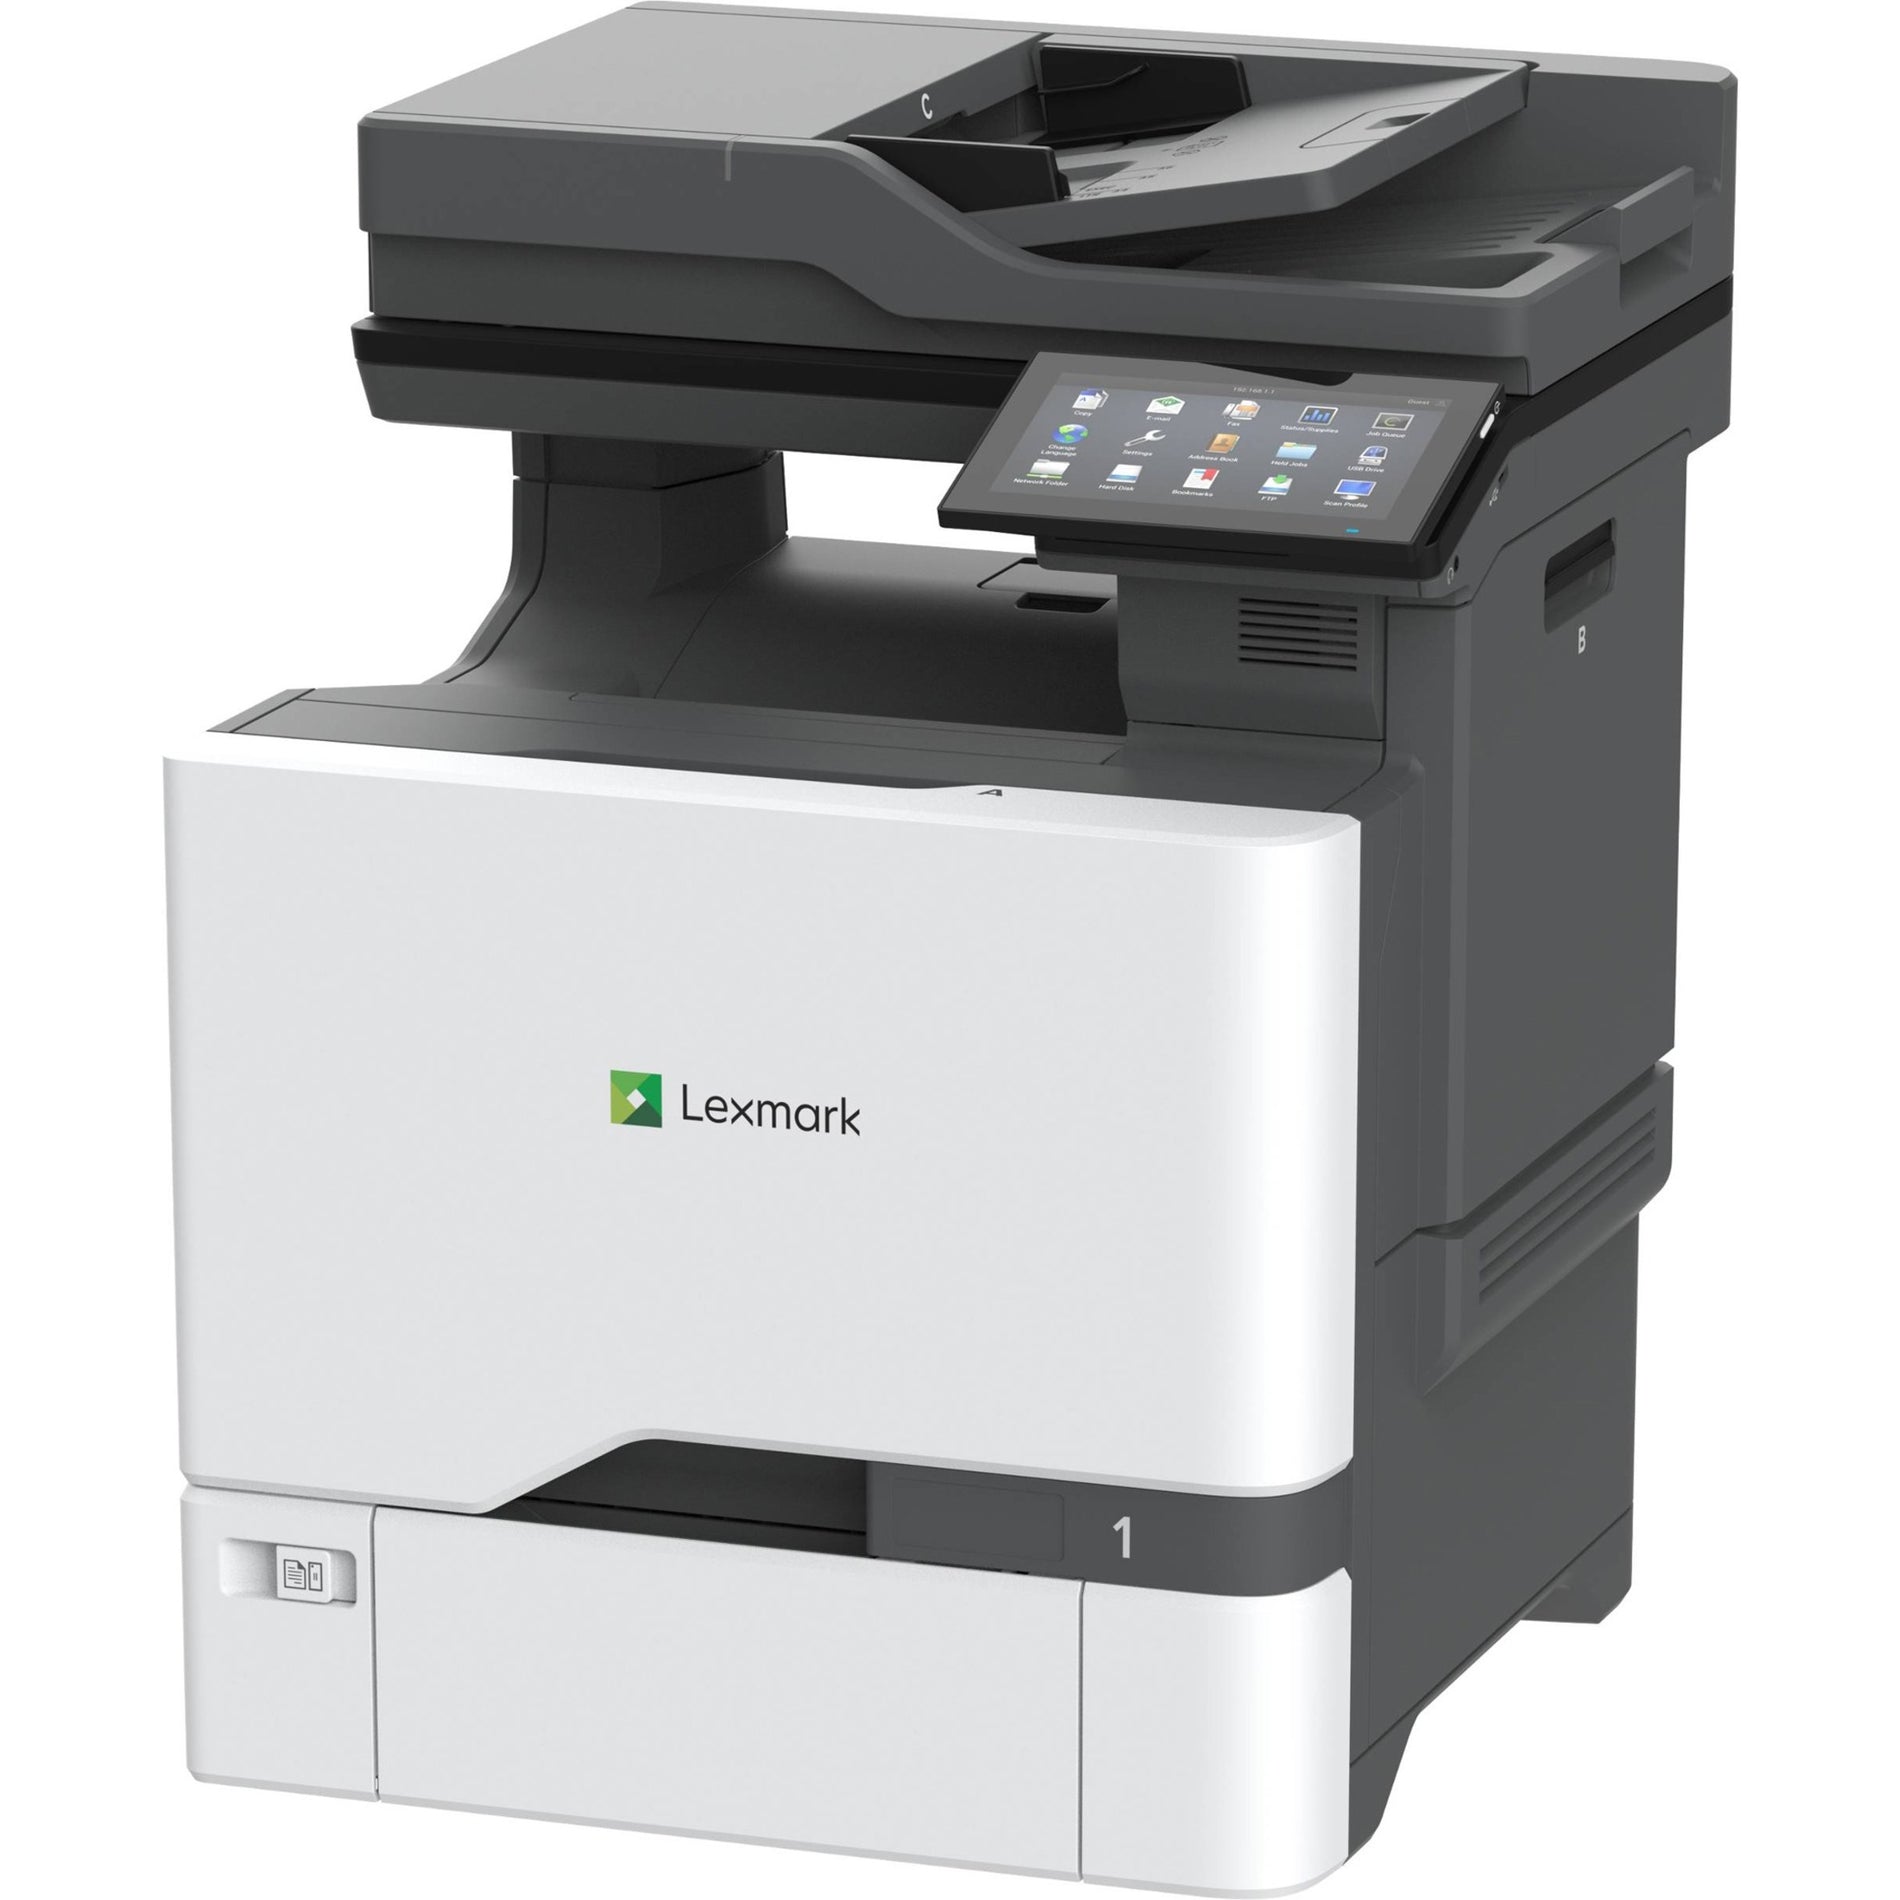 Impresora multifunción láser a color Lexmark 47C9500 CX730de Impresión dúplex automática Velocidad de impresión de 42 ppm Resolución de 2400 x 600 ppp Marca: Lexmark